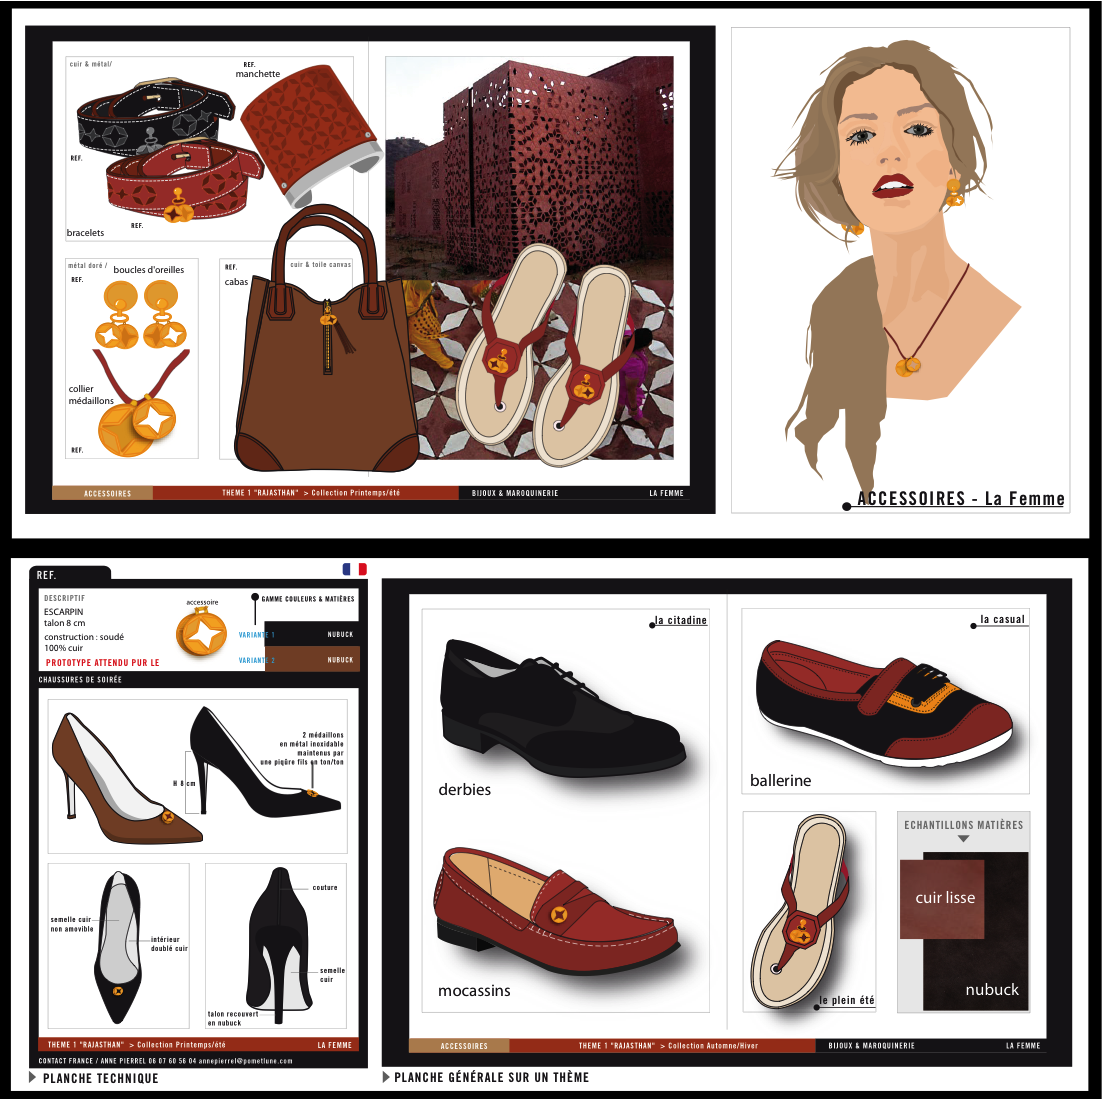 accessoires : la femme : bijoux, maroquinerie, petite maroquinerie, sacs, chaussures